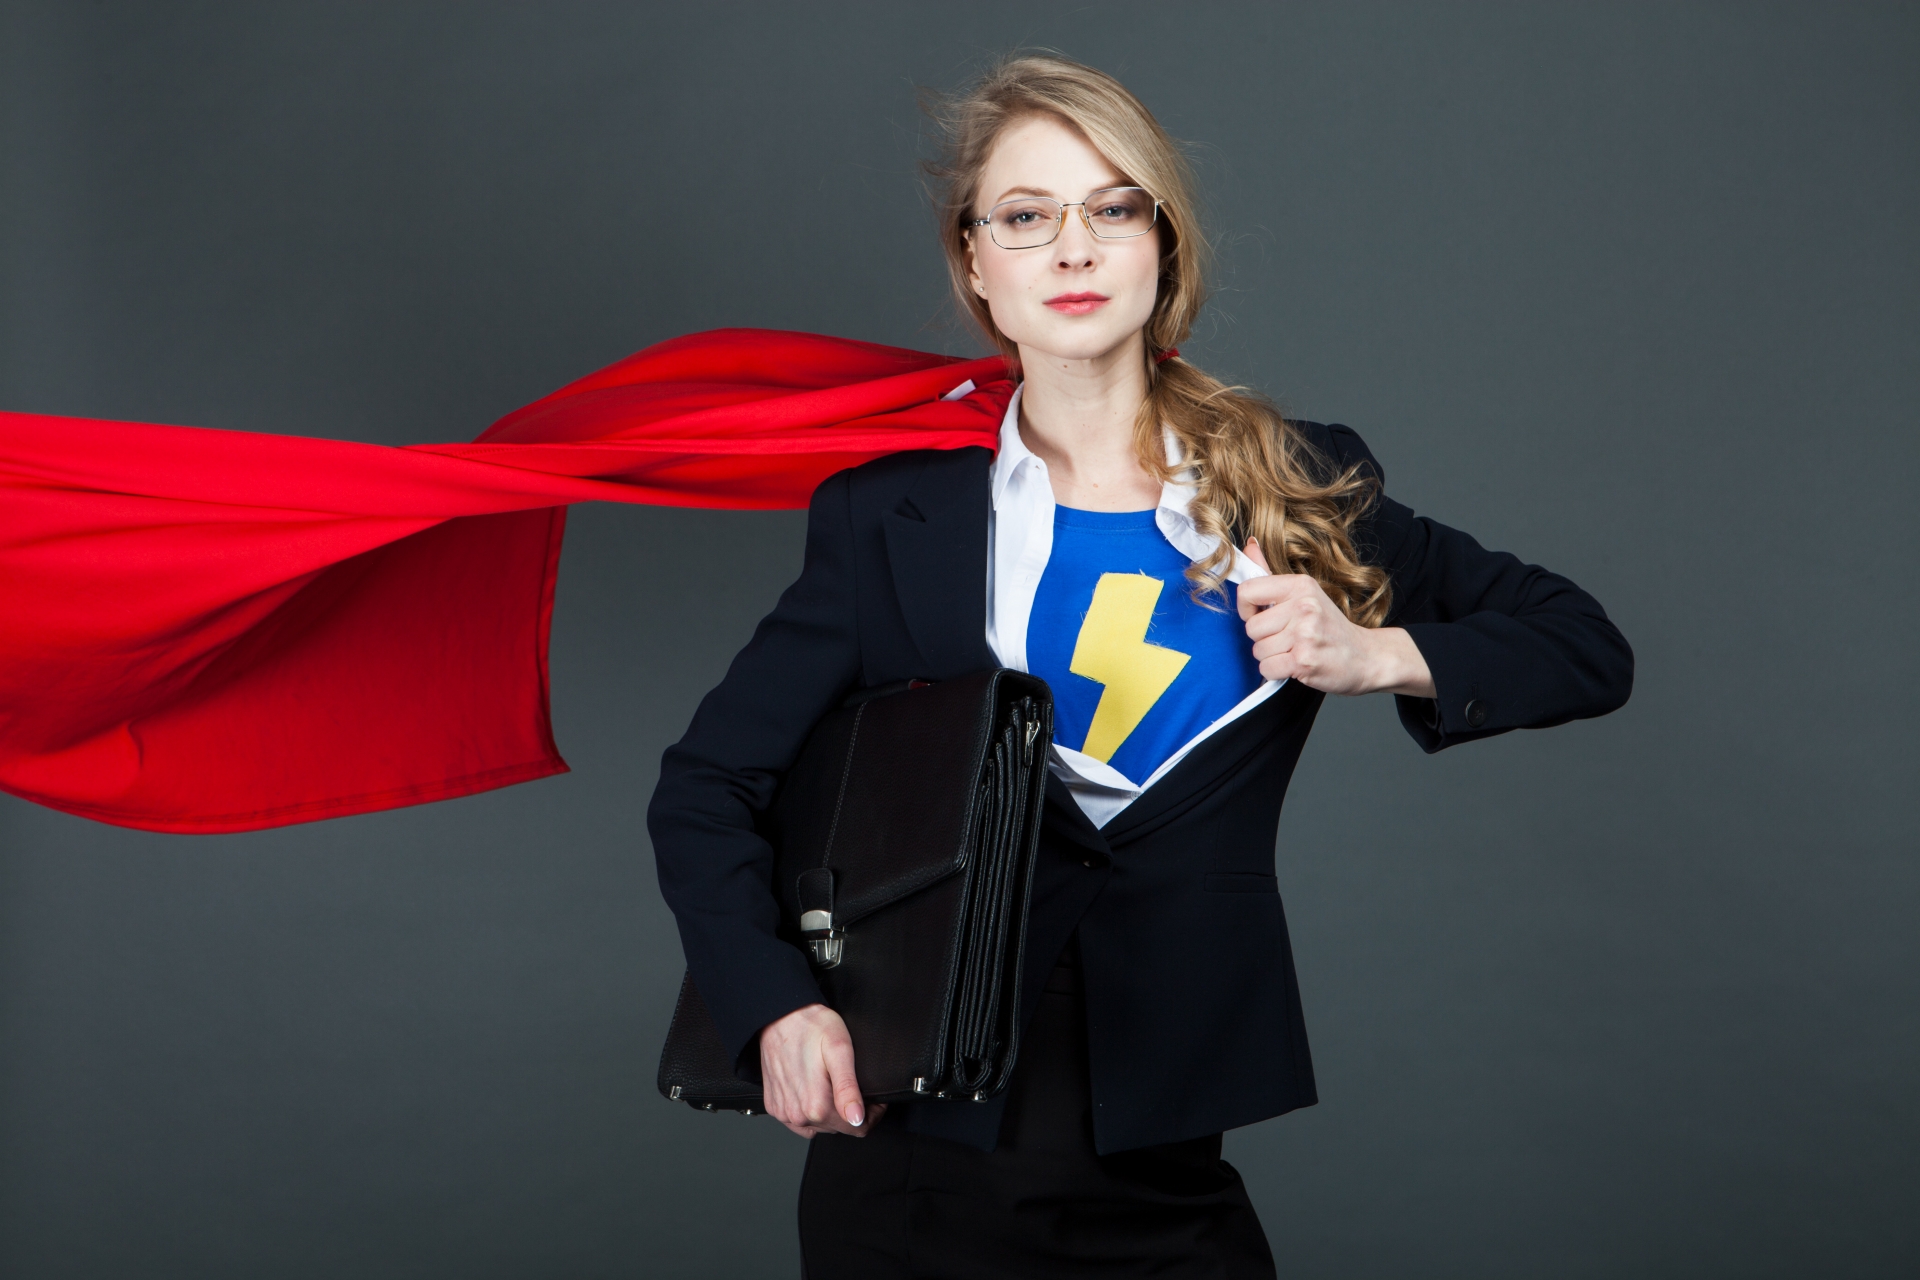 superman-uniform-business-woman-1